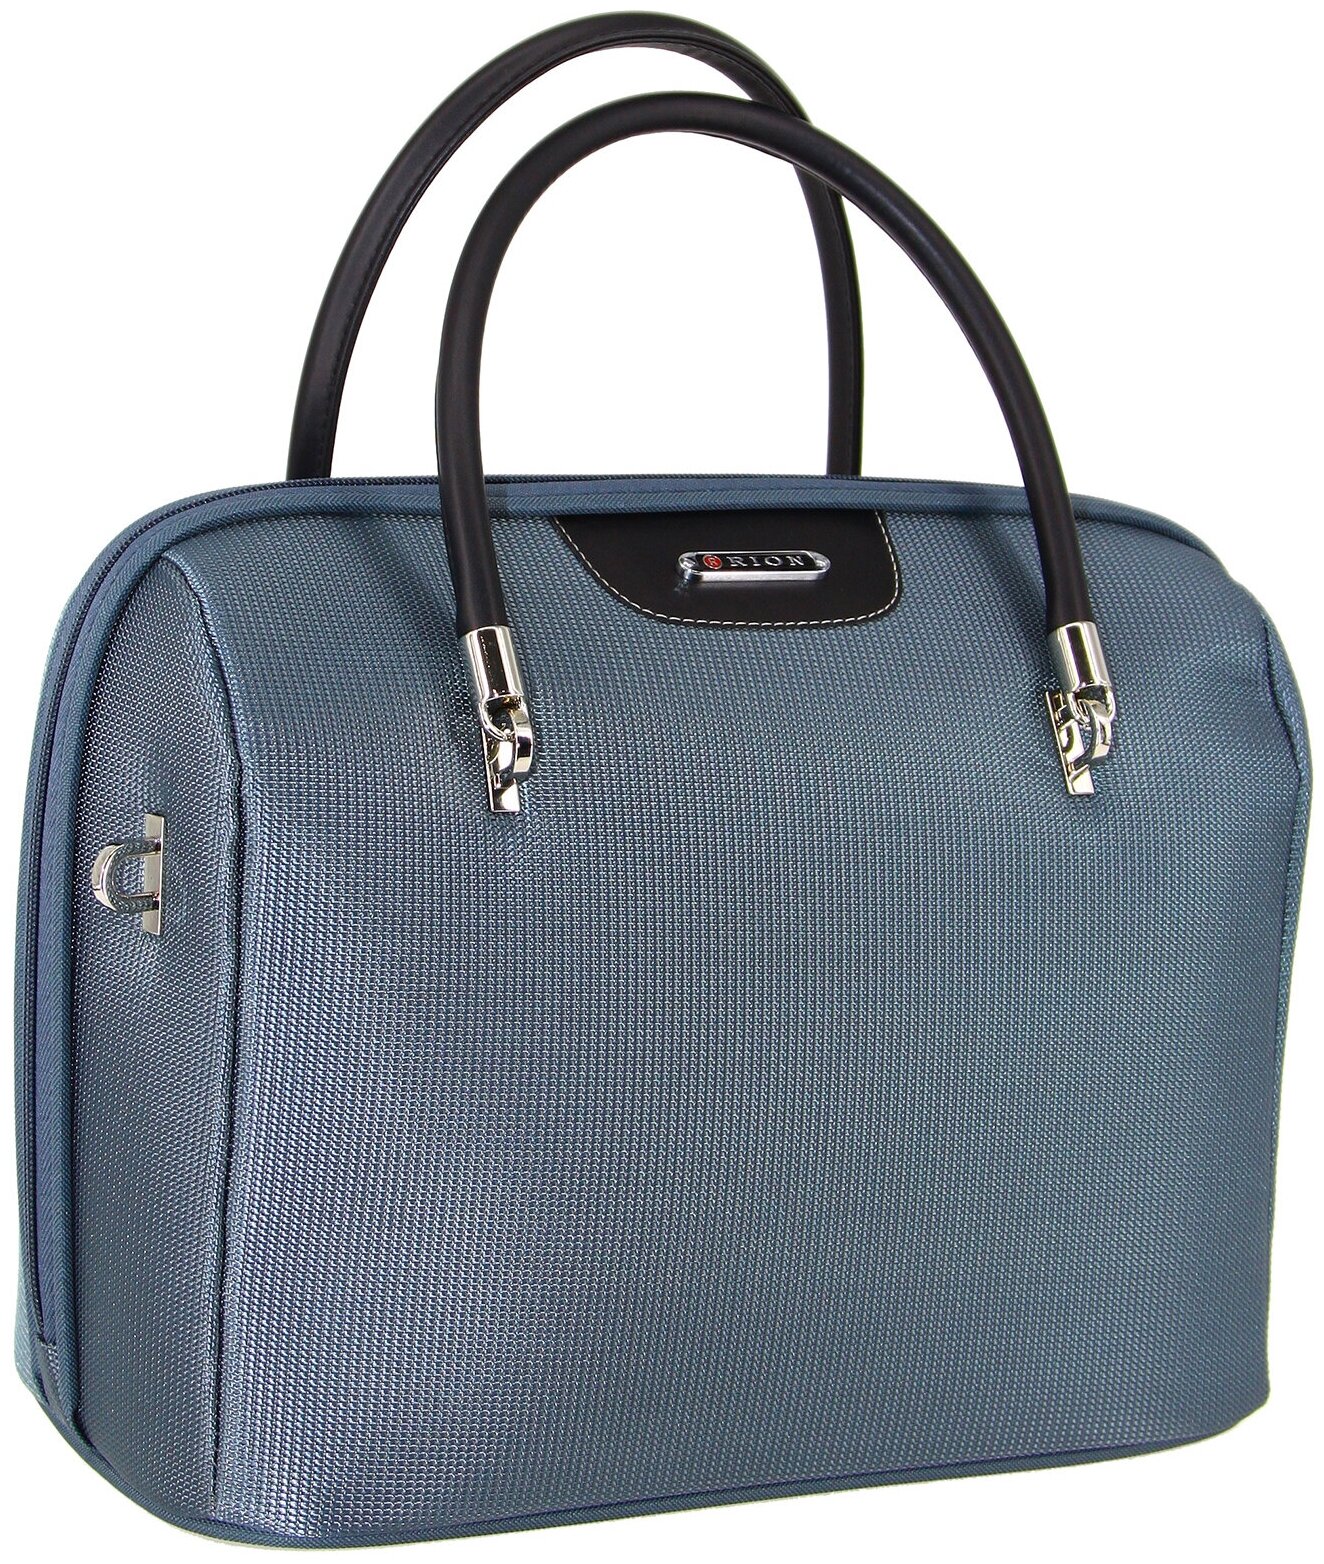 Дорожная сумка с ремнем на ручку чемодана Рион+ (RION+) / ручная кладь для самолета / саквояж , R240, Тканевая, 20 литров, серный-168